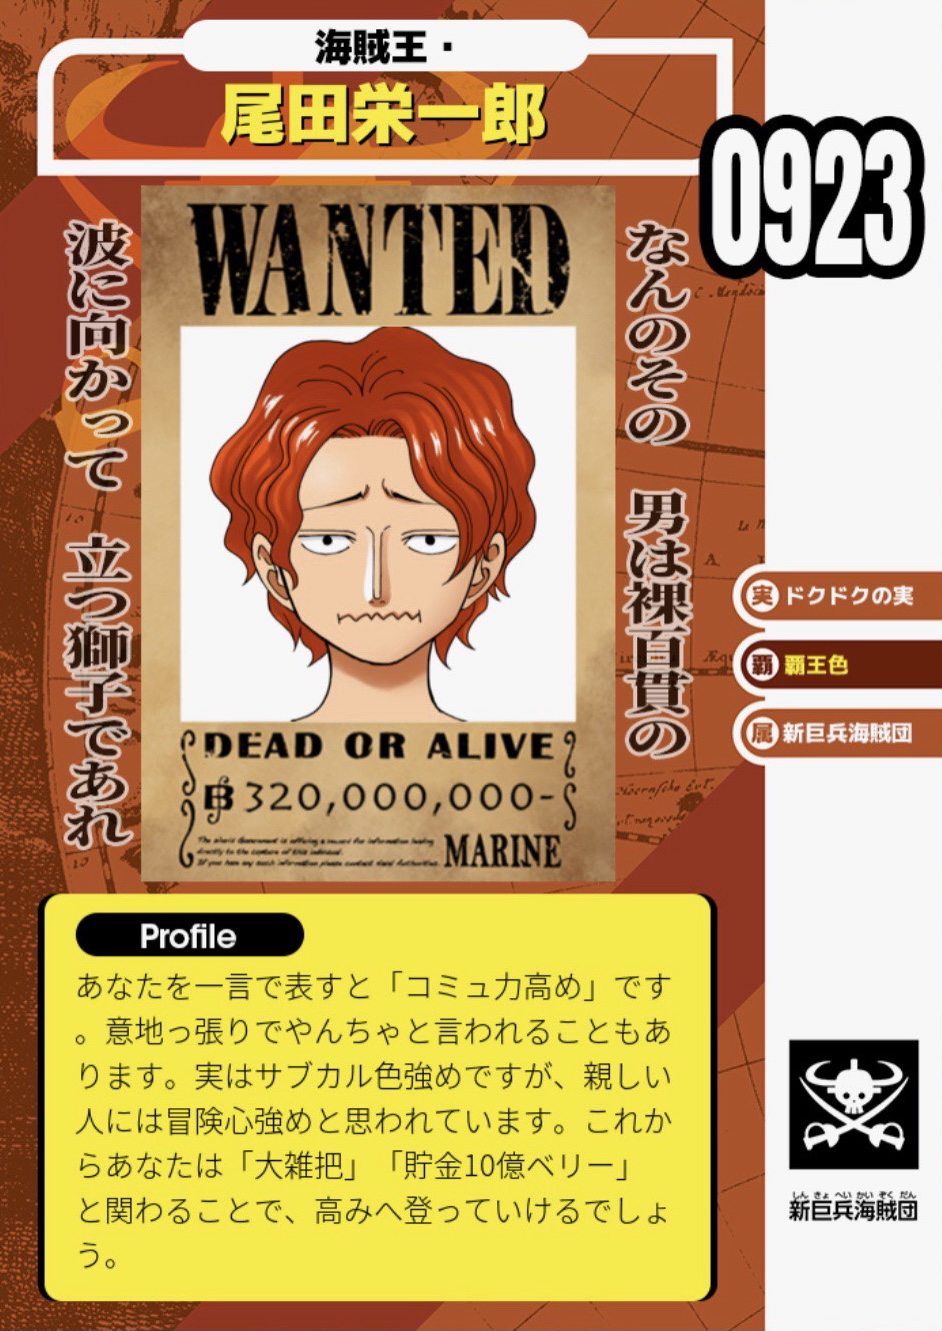 One Piece スタッフ 公式 Official 特報 キミの 海賊魂 を映し出す ワンピ流 診断メーカー ができました その名も Onepiece海賊メーカー 尾田っちの診断結果はこれだ キミだけの ビブルカード を作って みんなにシェアしよう